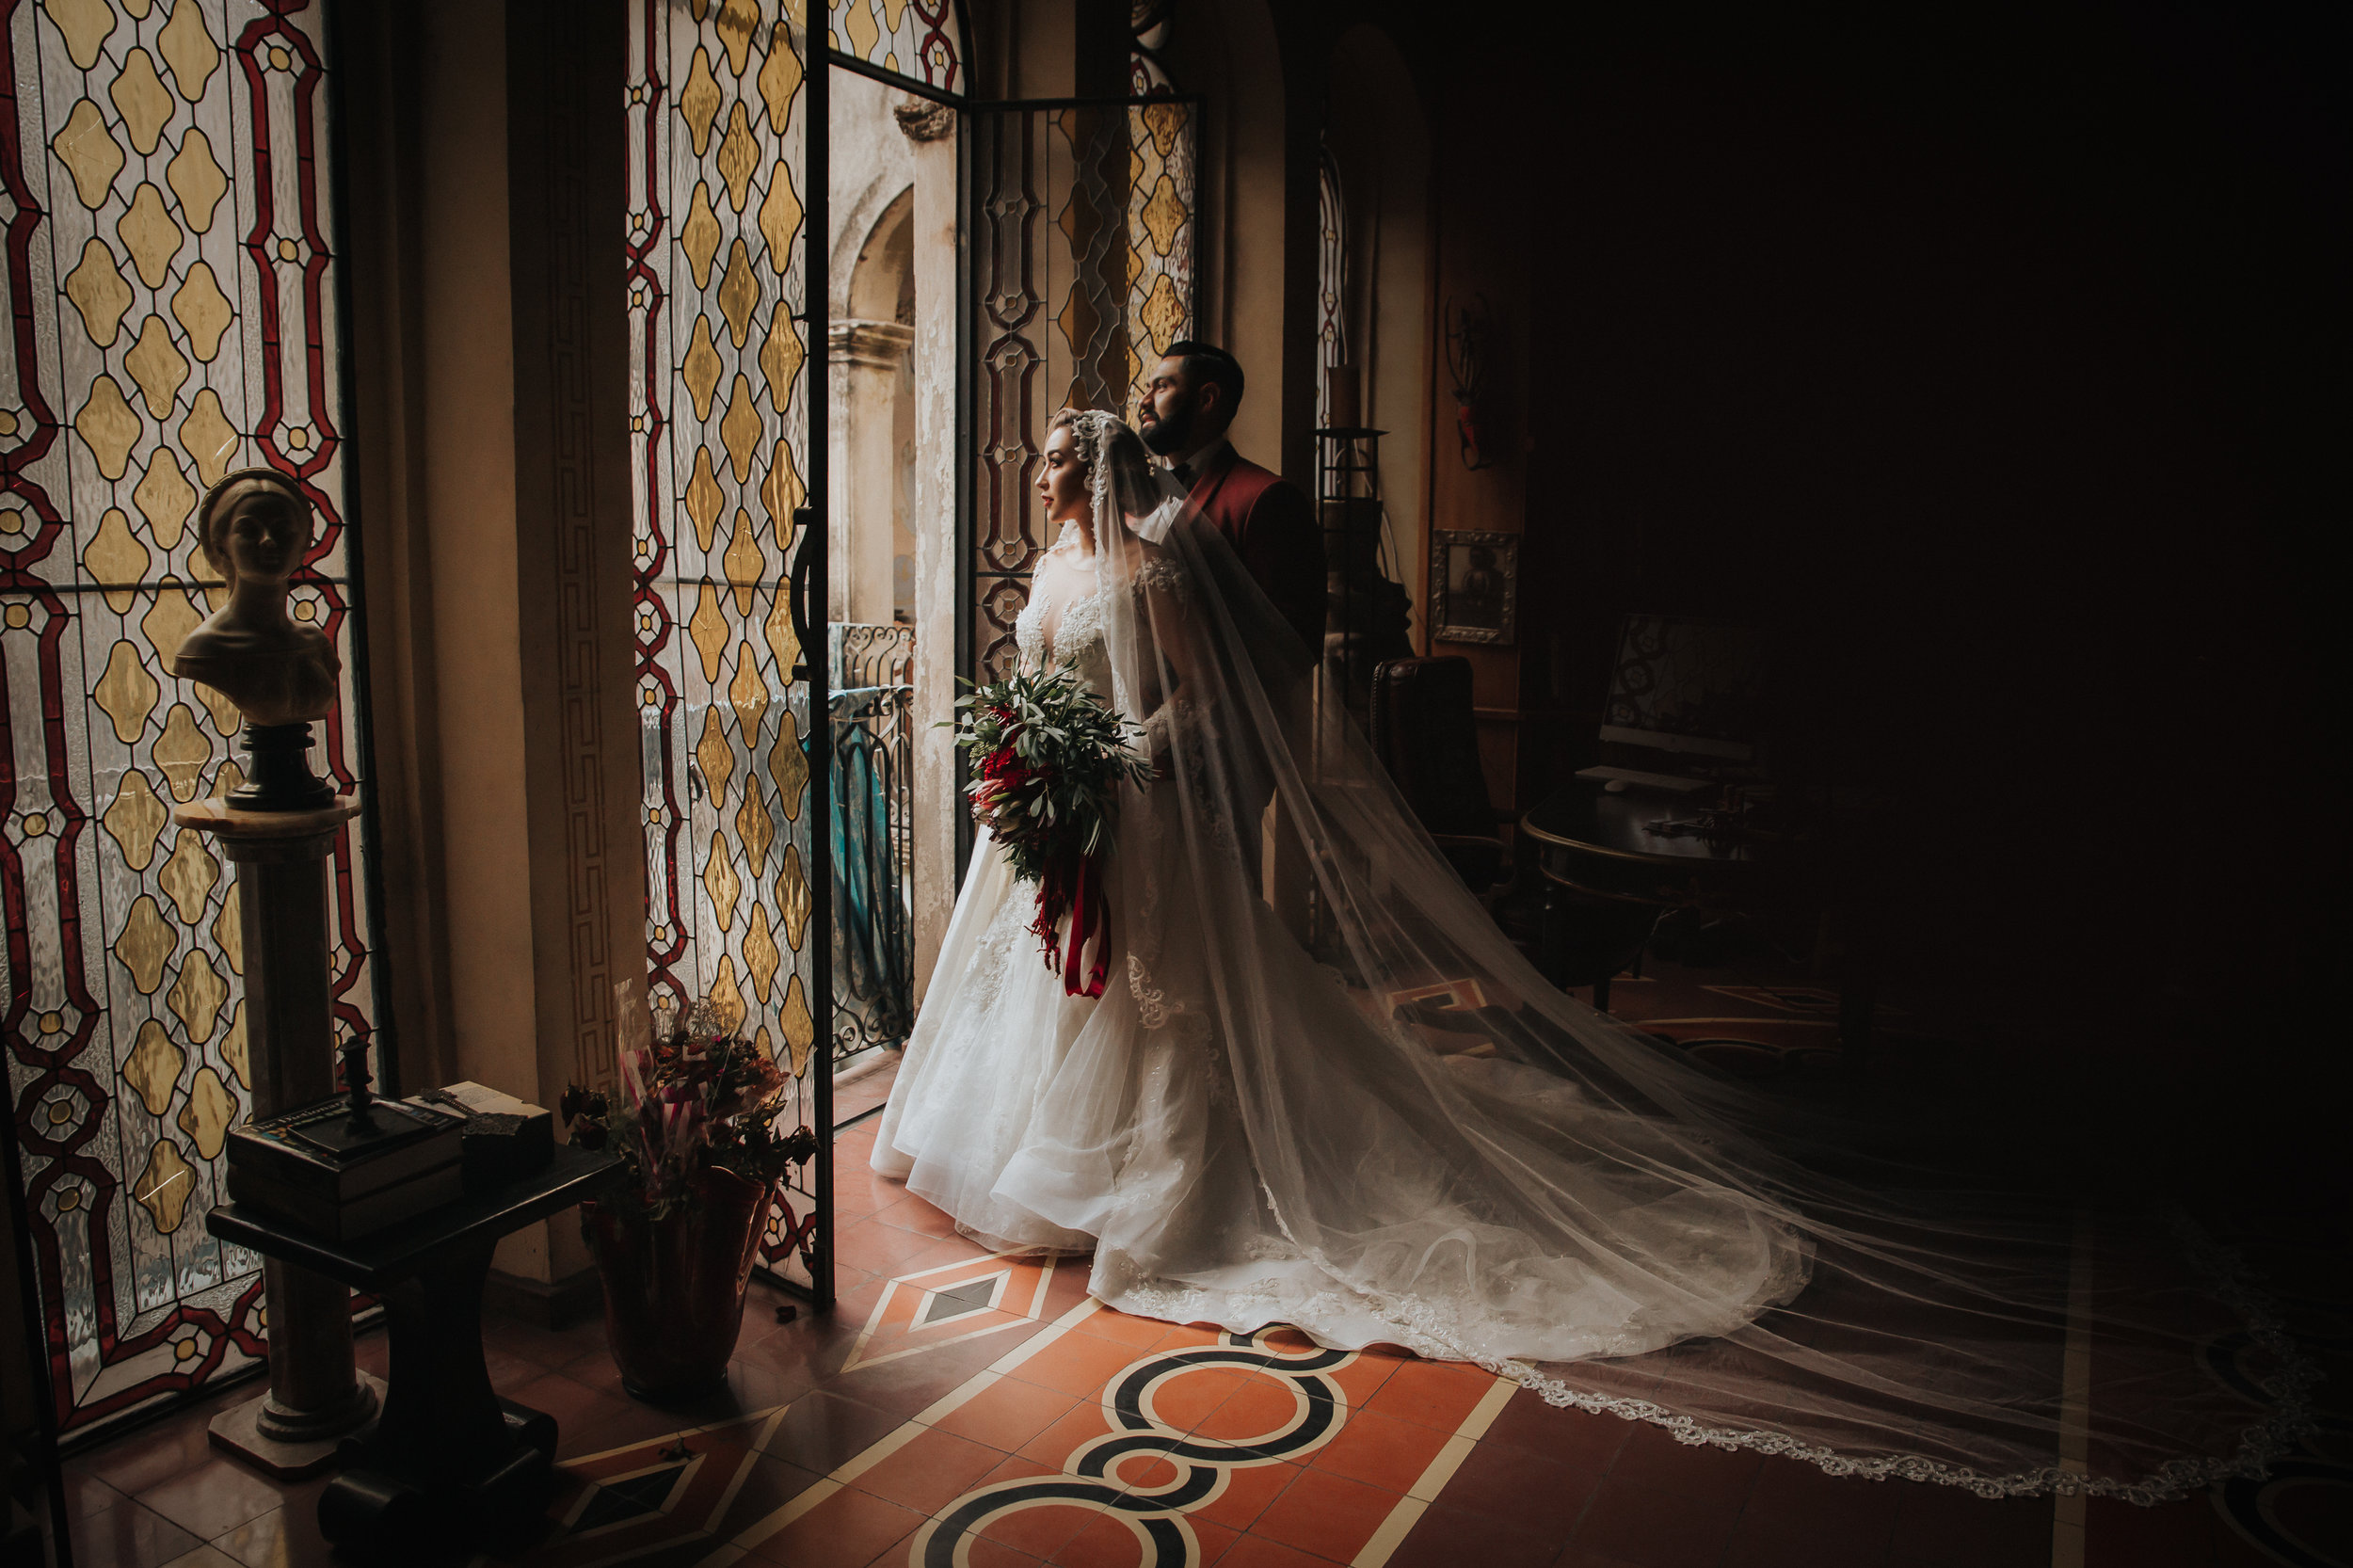 Fotografo-de-bodas-destino-Mexico-wedding-destination-photographer-san-miguel-de-allende-gto-guanajuato-queretaro-boho-bohemian-bohemio-chic-editorial-carotida-photographer-italian-gothic